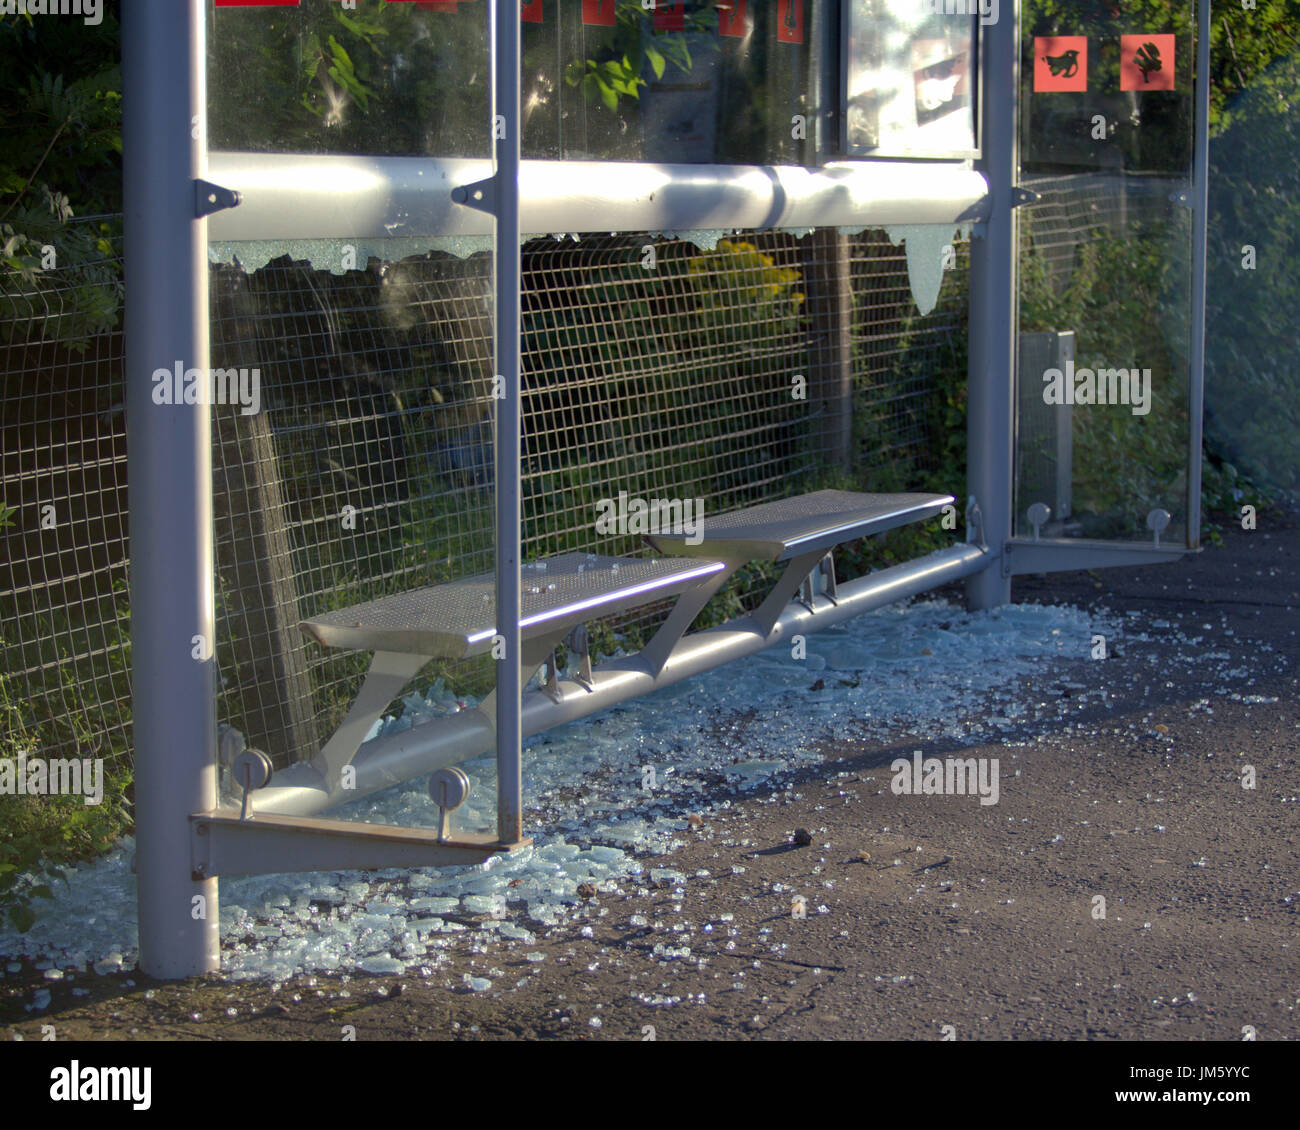 Il bus shelter vandalizzato soggetto ad atti vandalici con rotte fracassato finestra in vetro Foto Stock